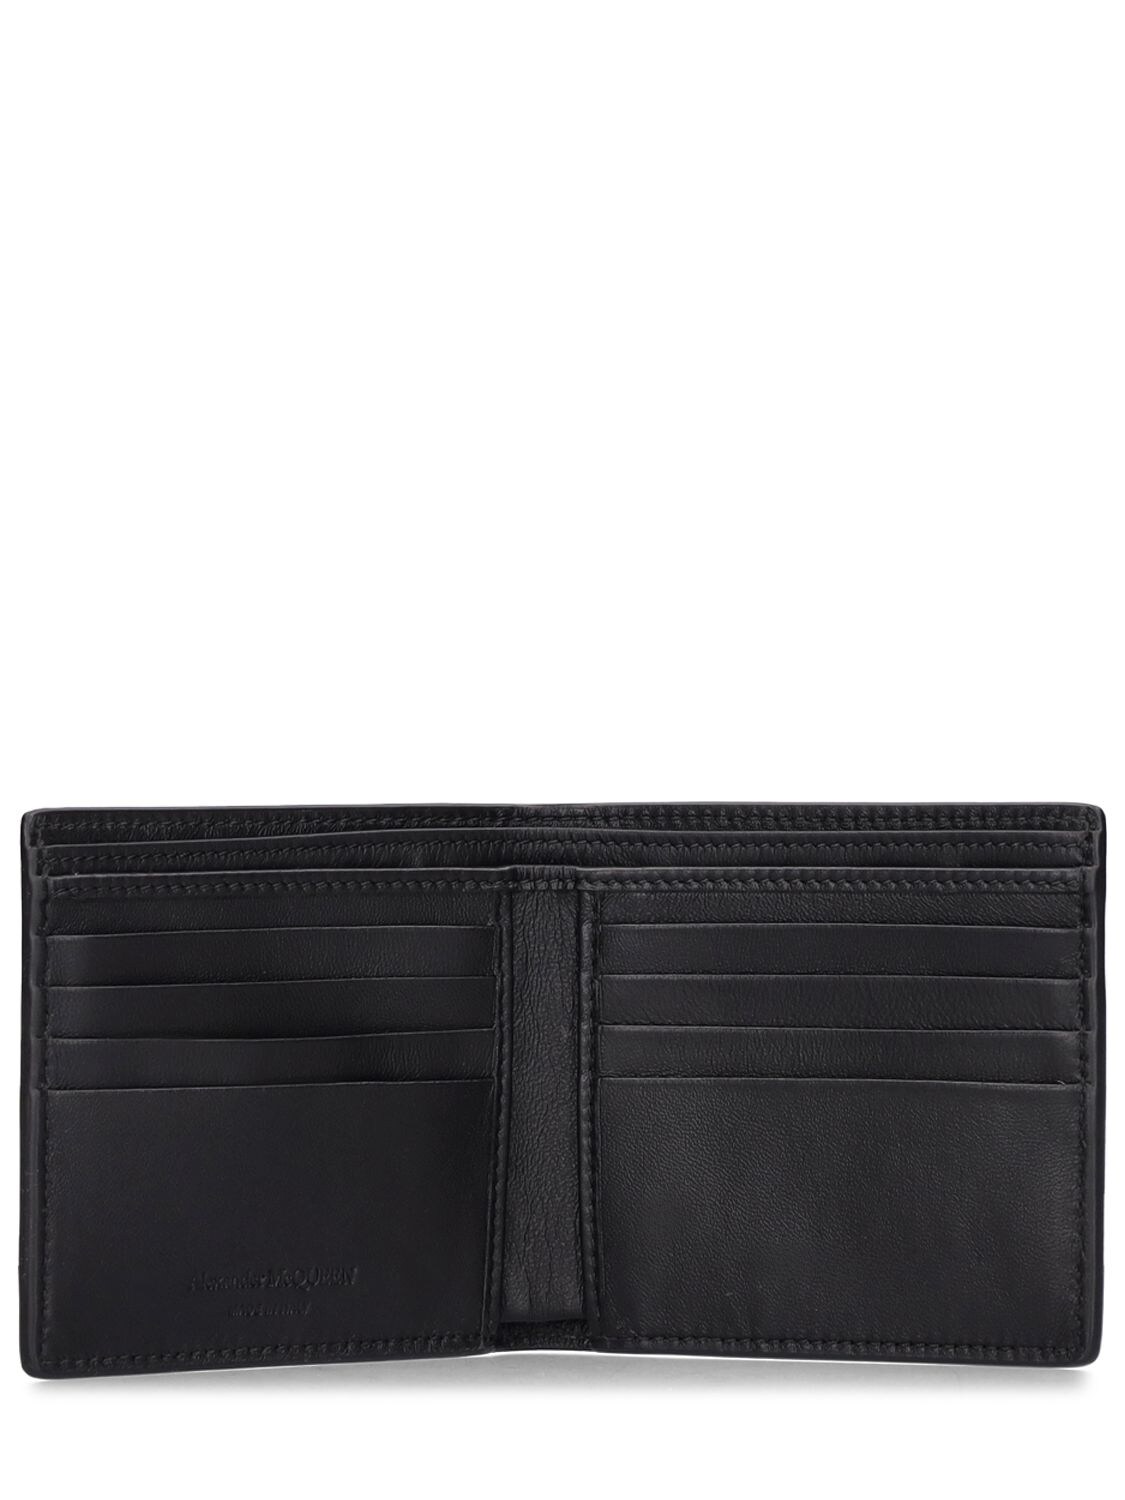 Shop Alexander Mcqueen Billfold Wallet In Black